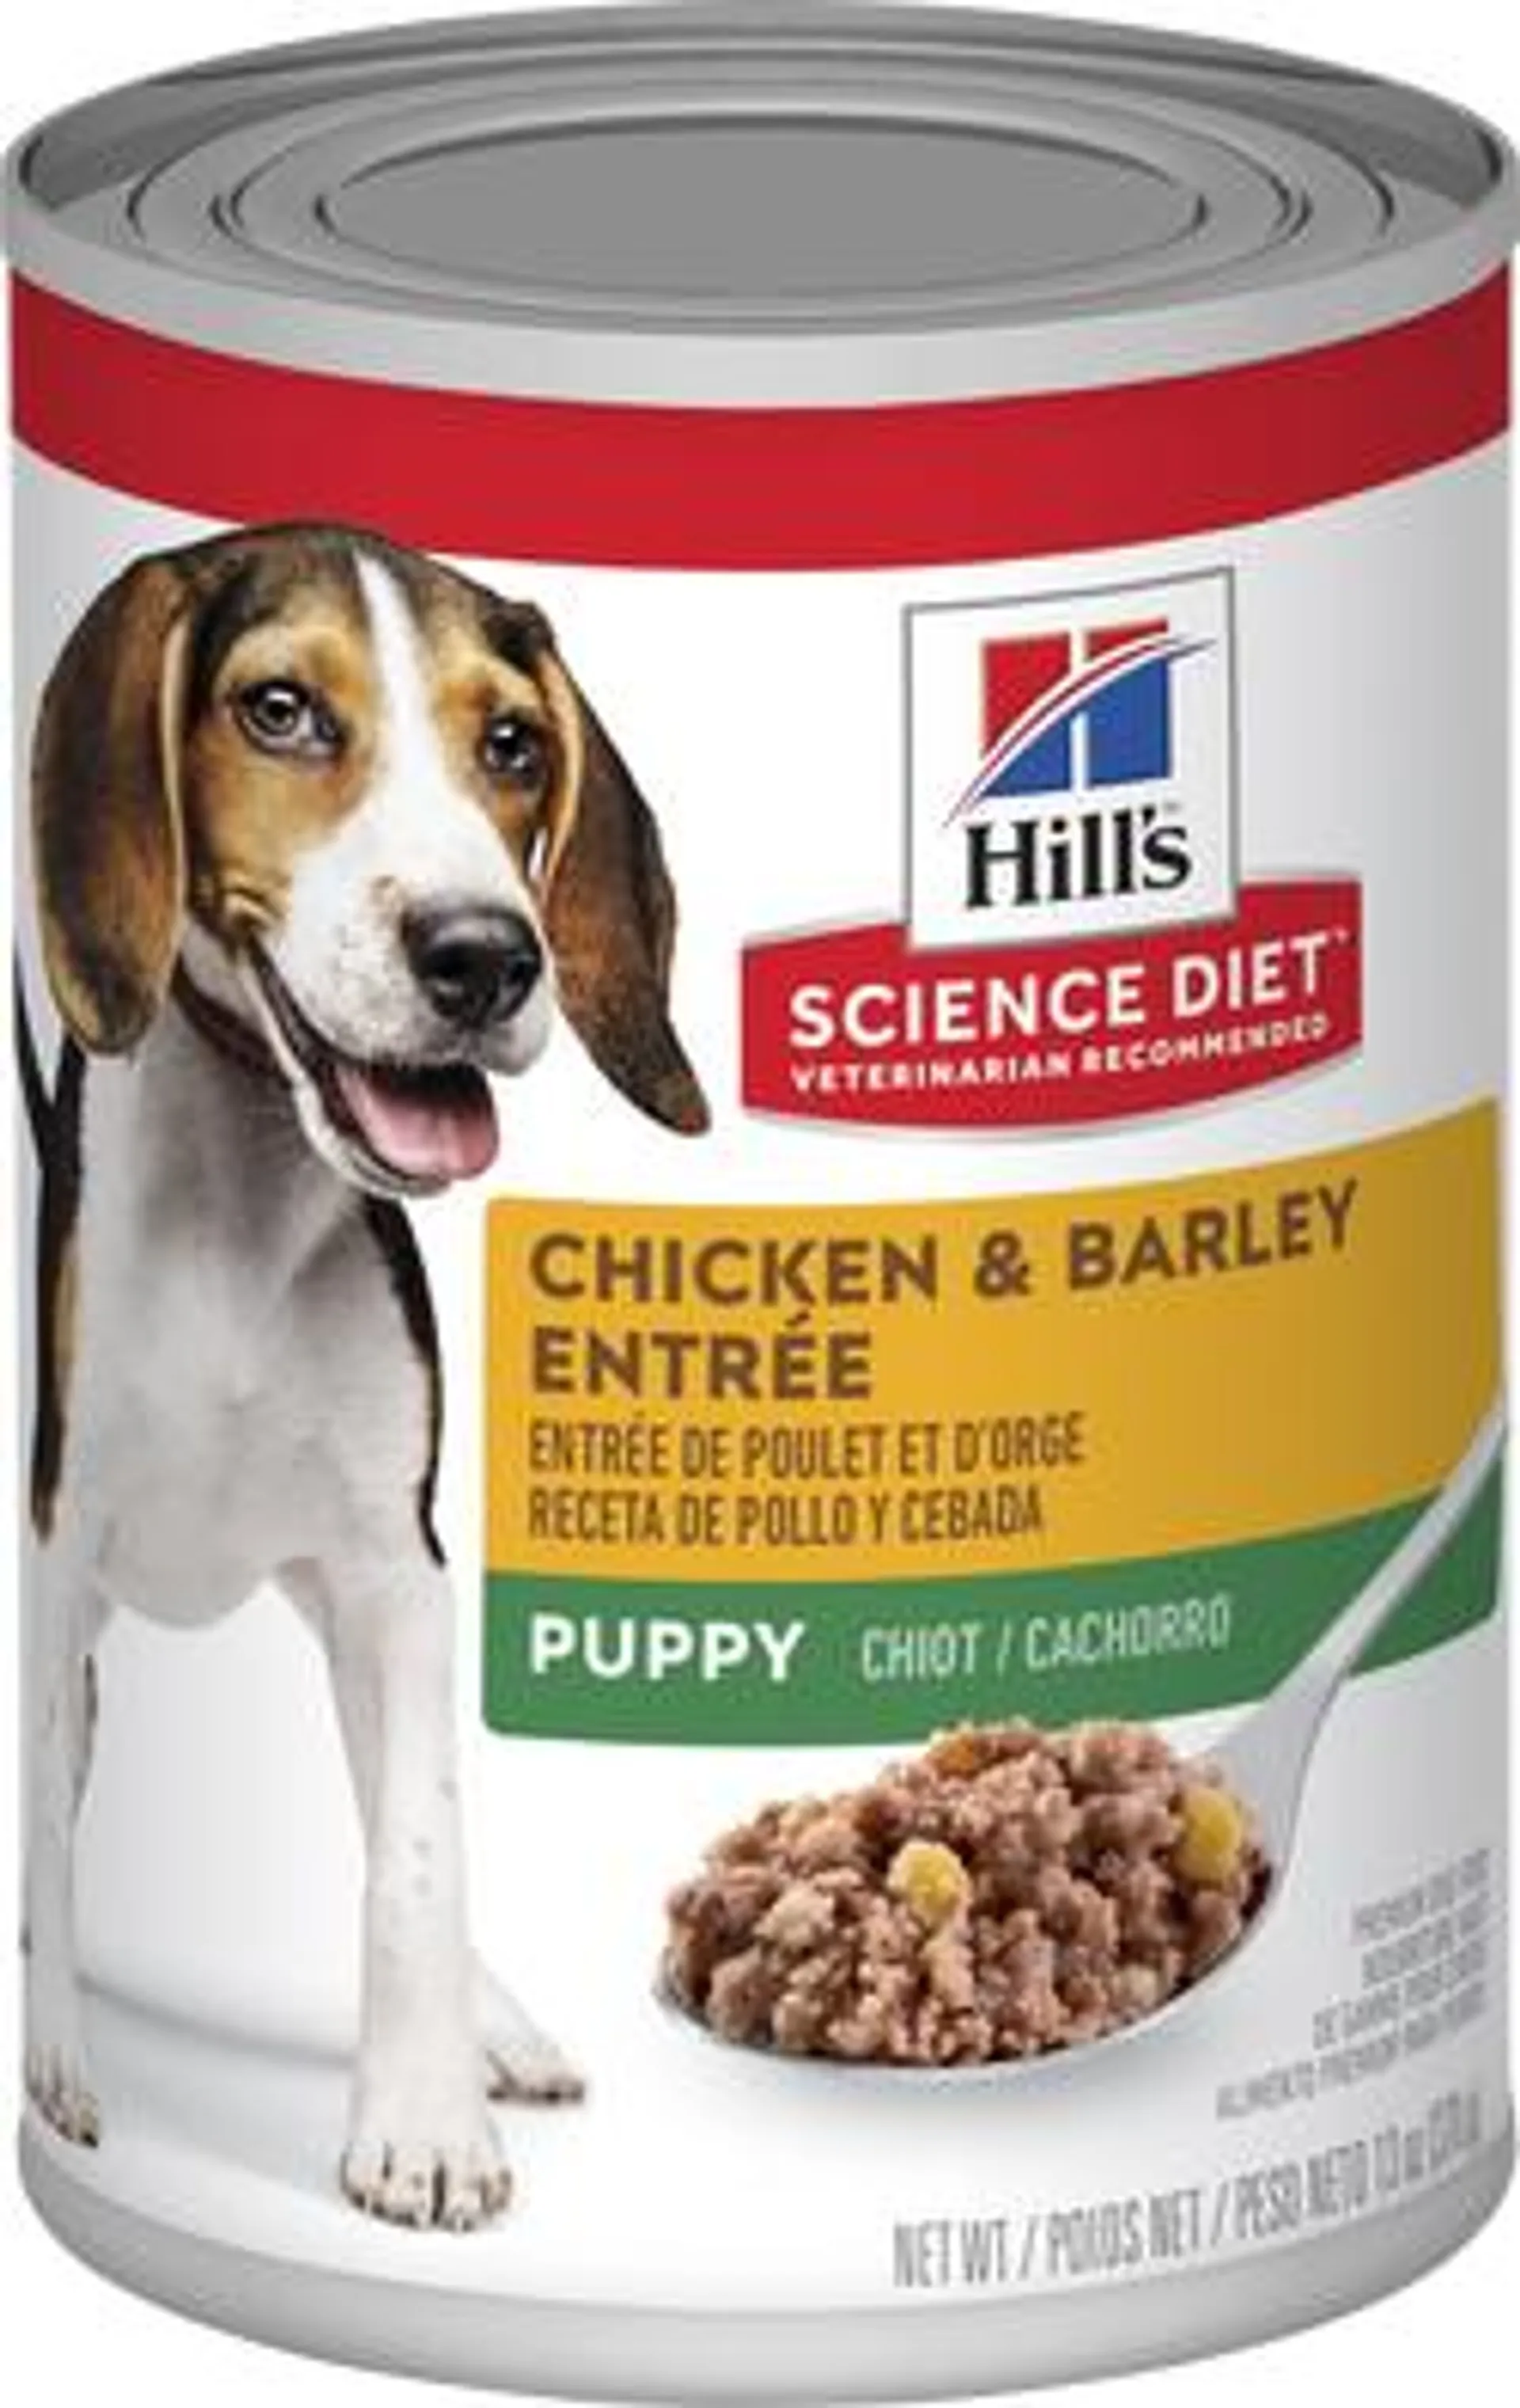 Hill's Science Diet Puppy Chicken & Barley Entree Wet Dog Food